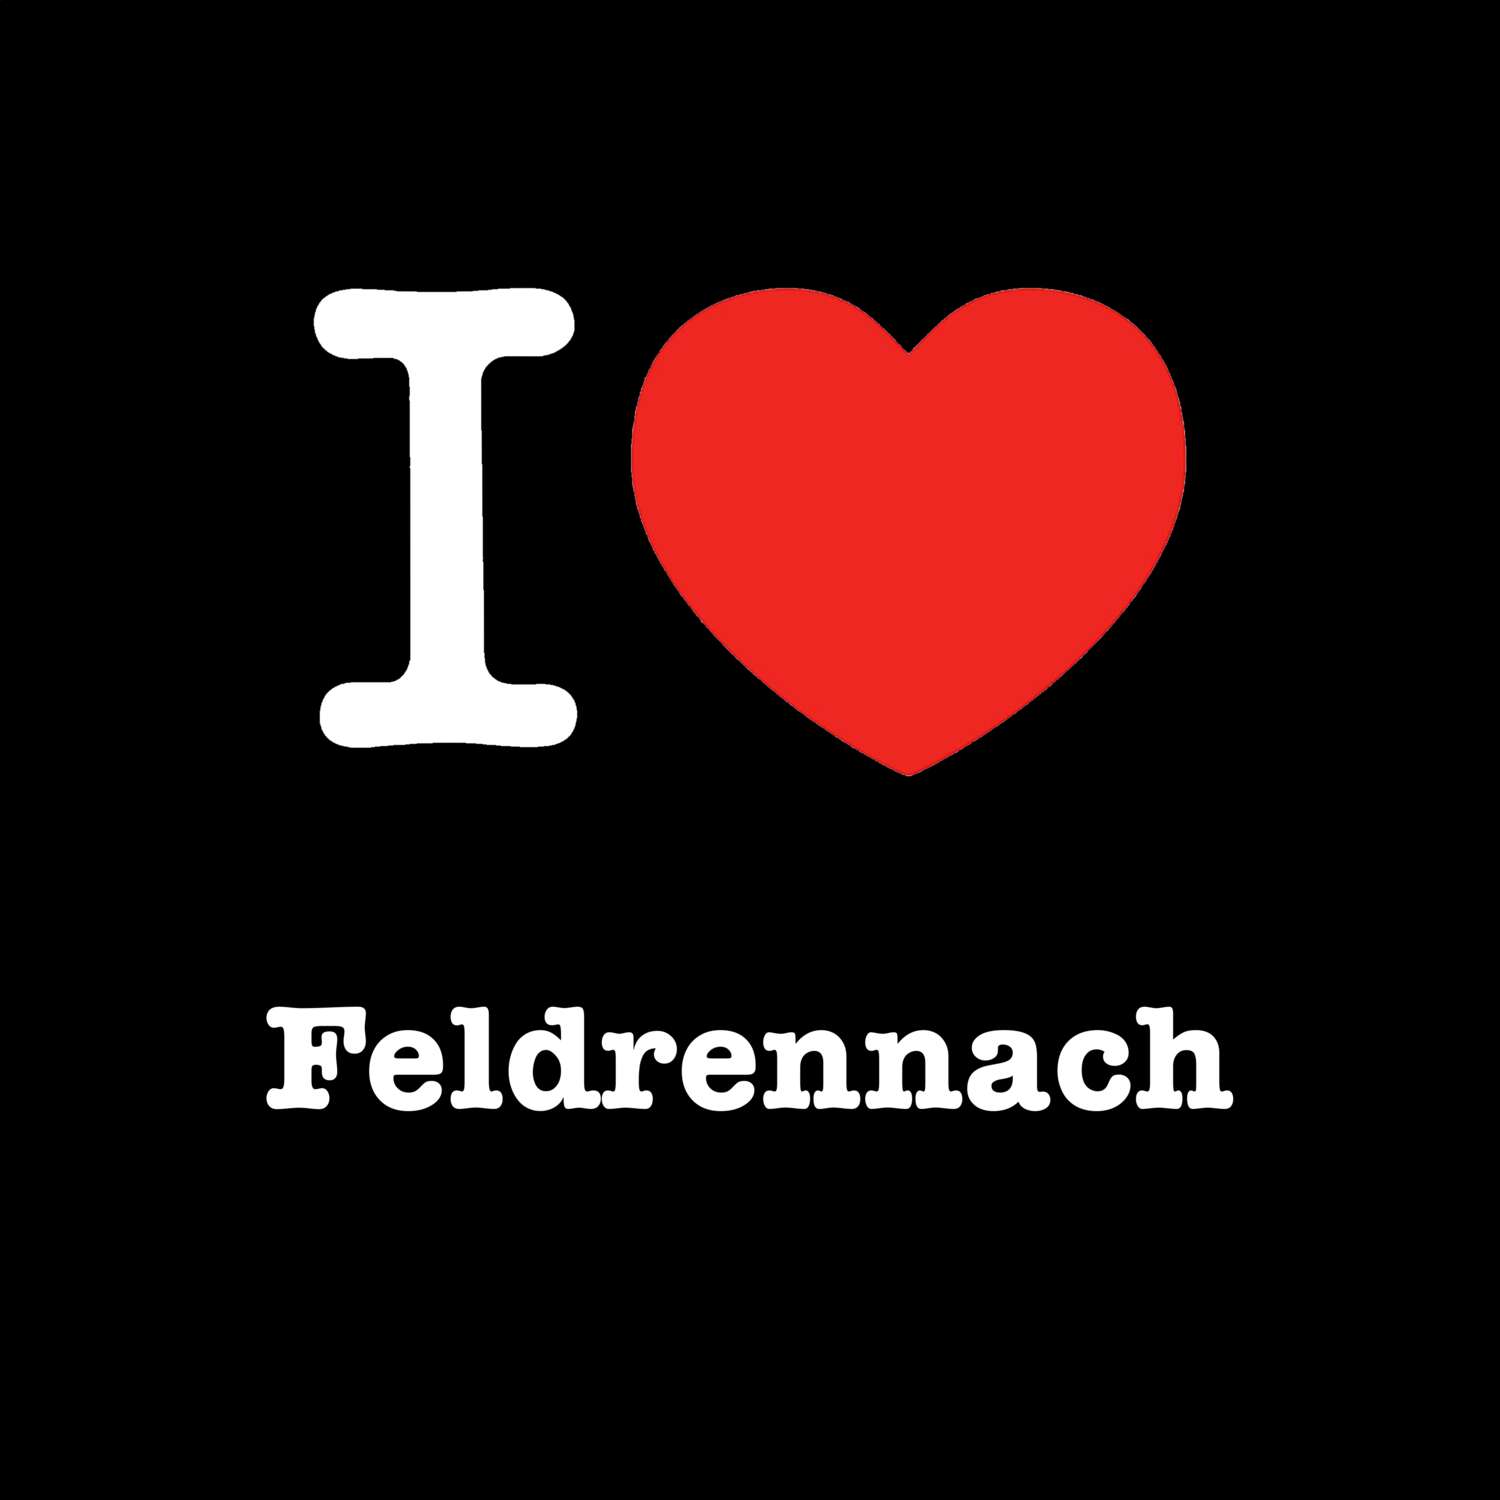 Feldrennach T-Shirt »I love«